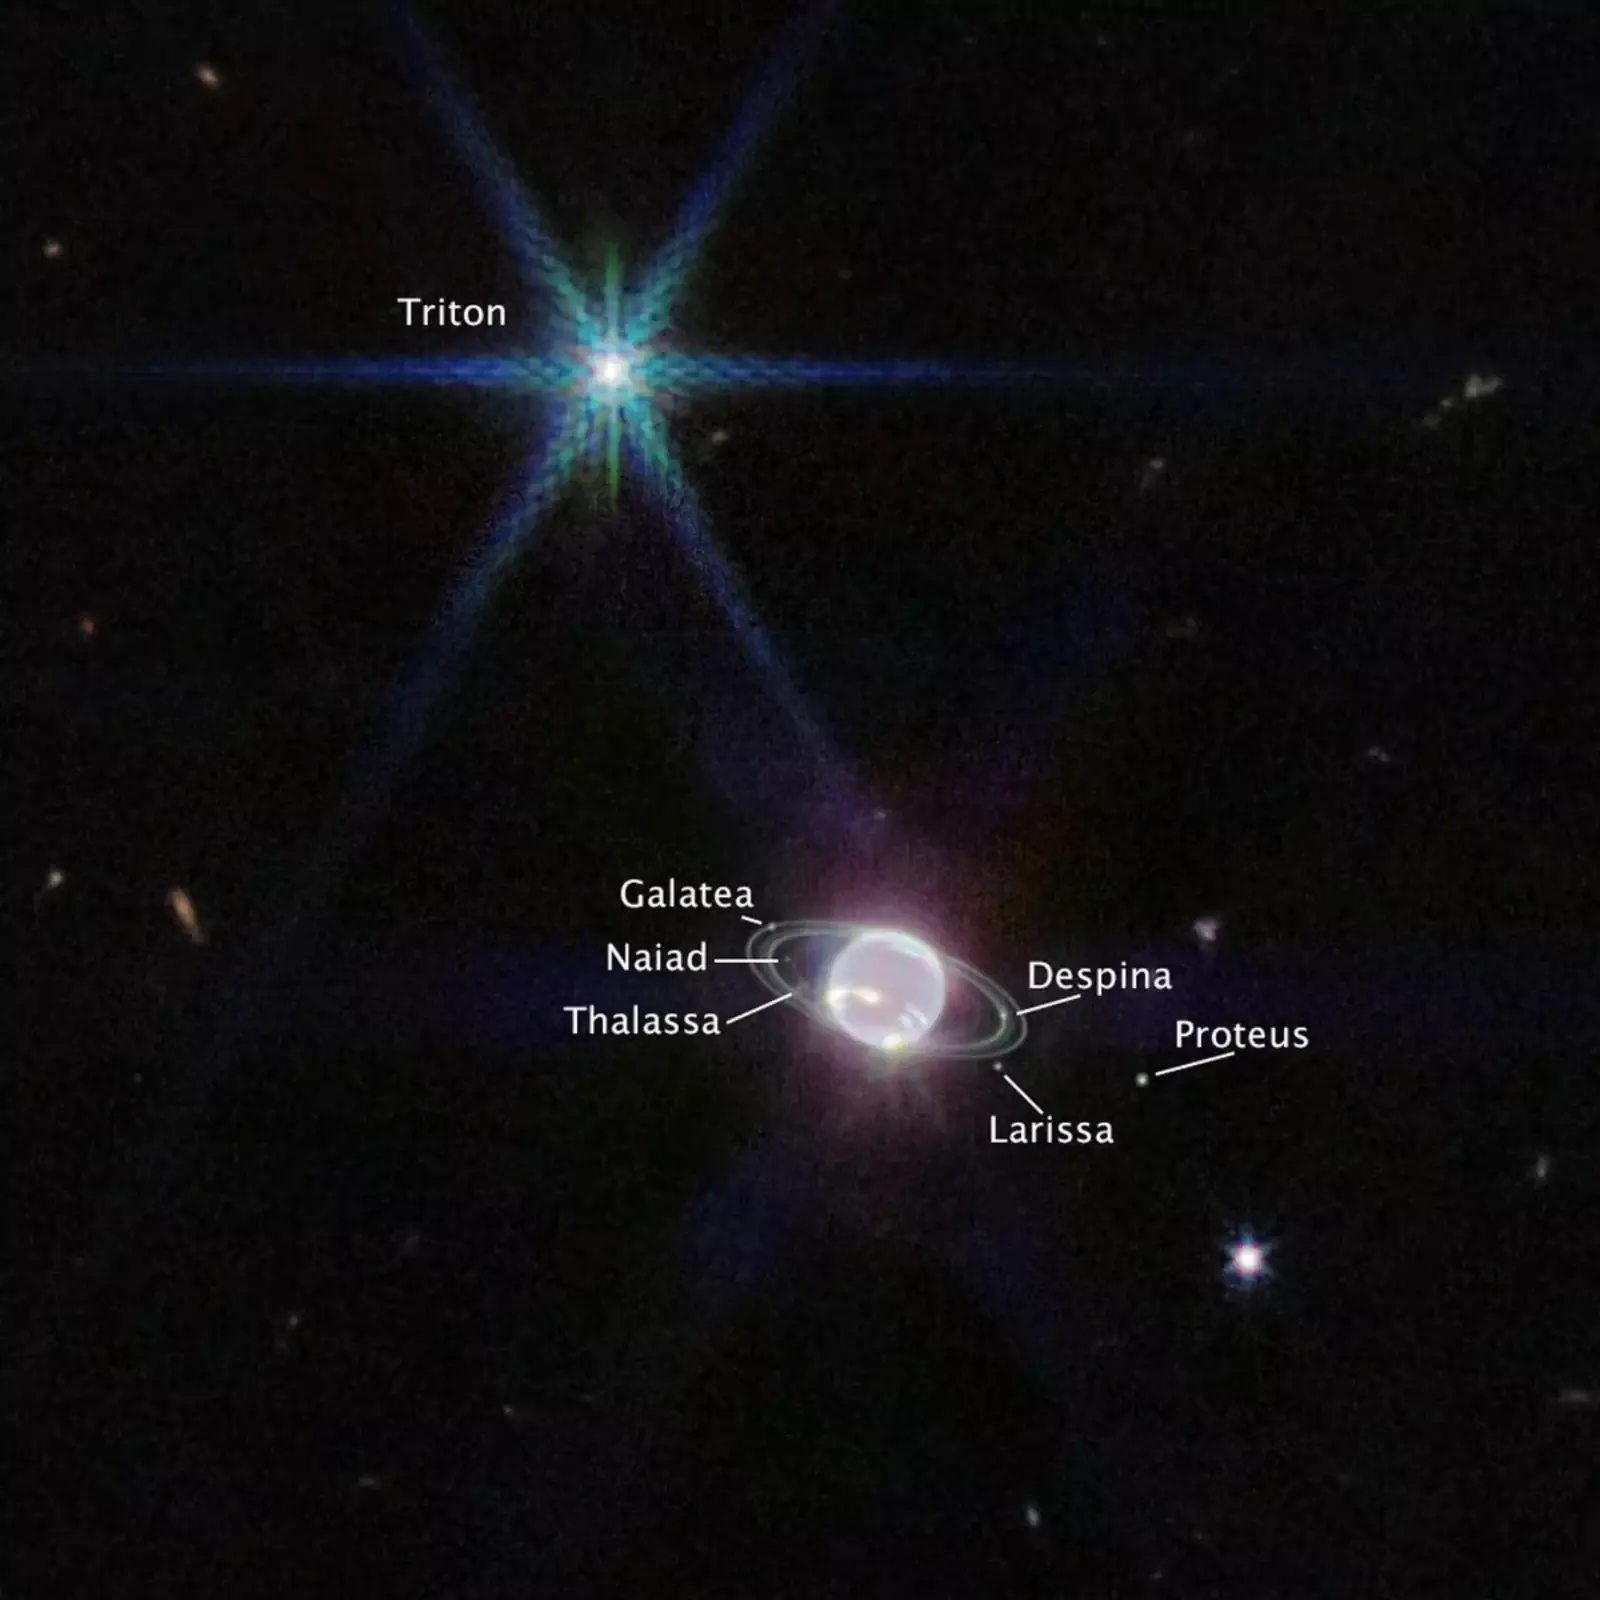 У Нептуна 14 известных спутников, и 7 из них видны на этом изображении.